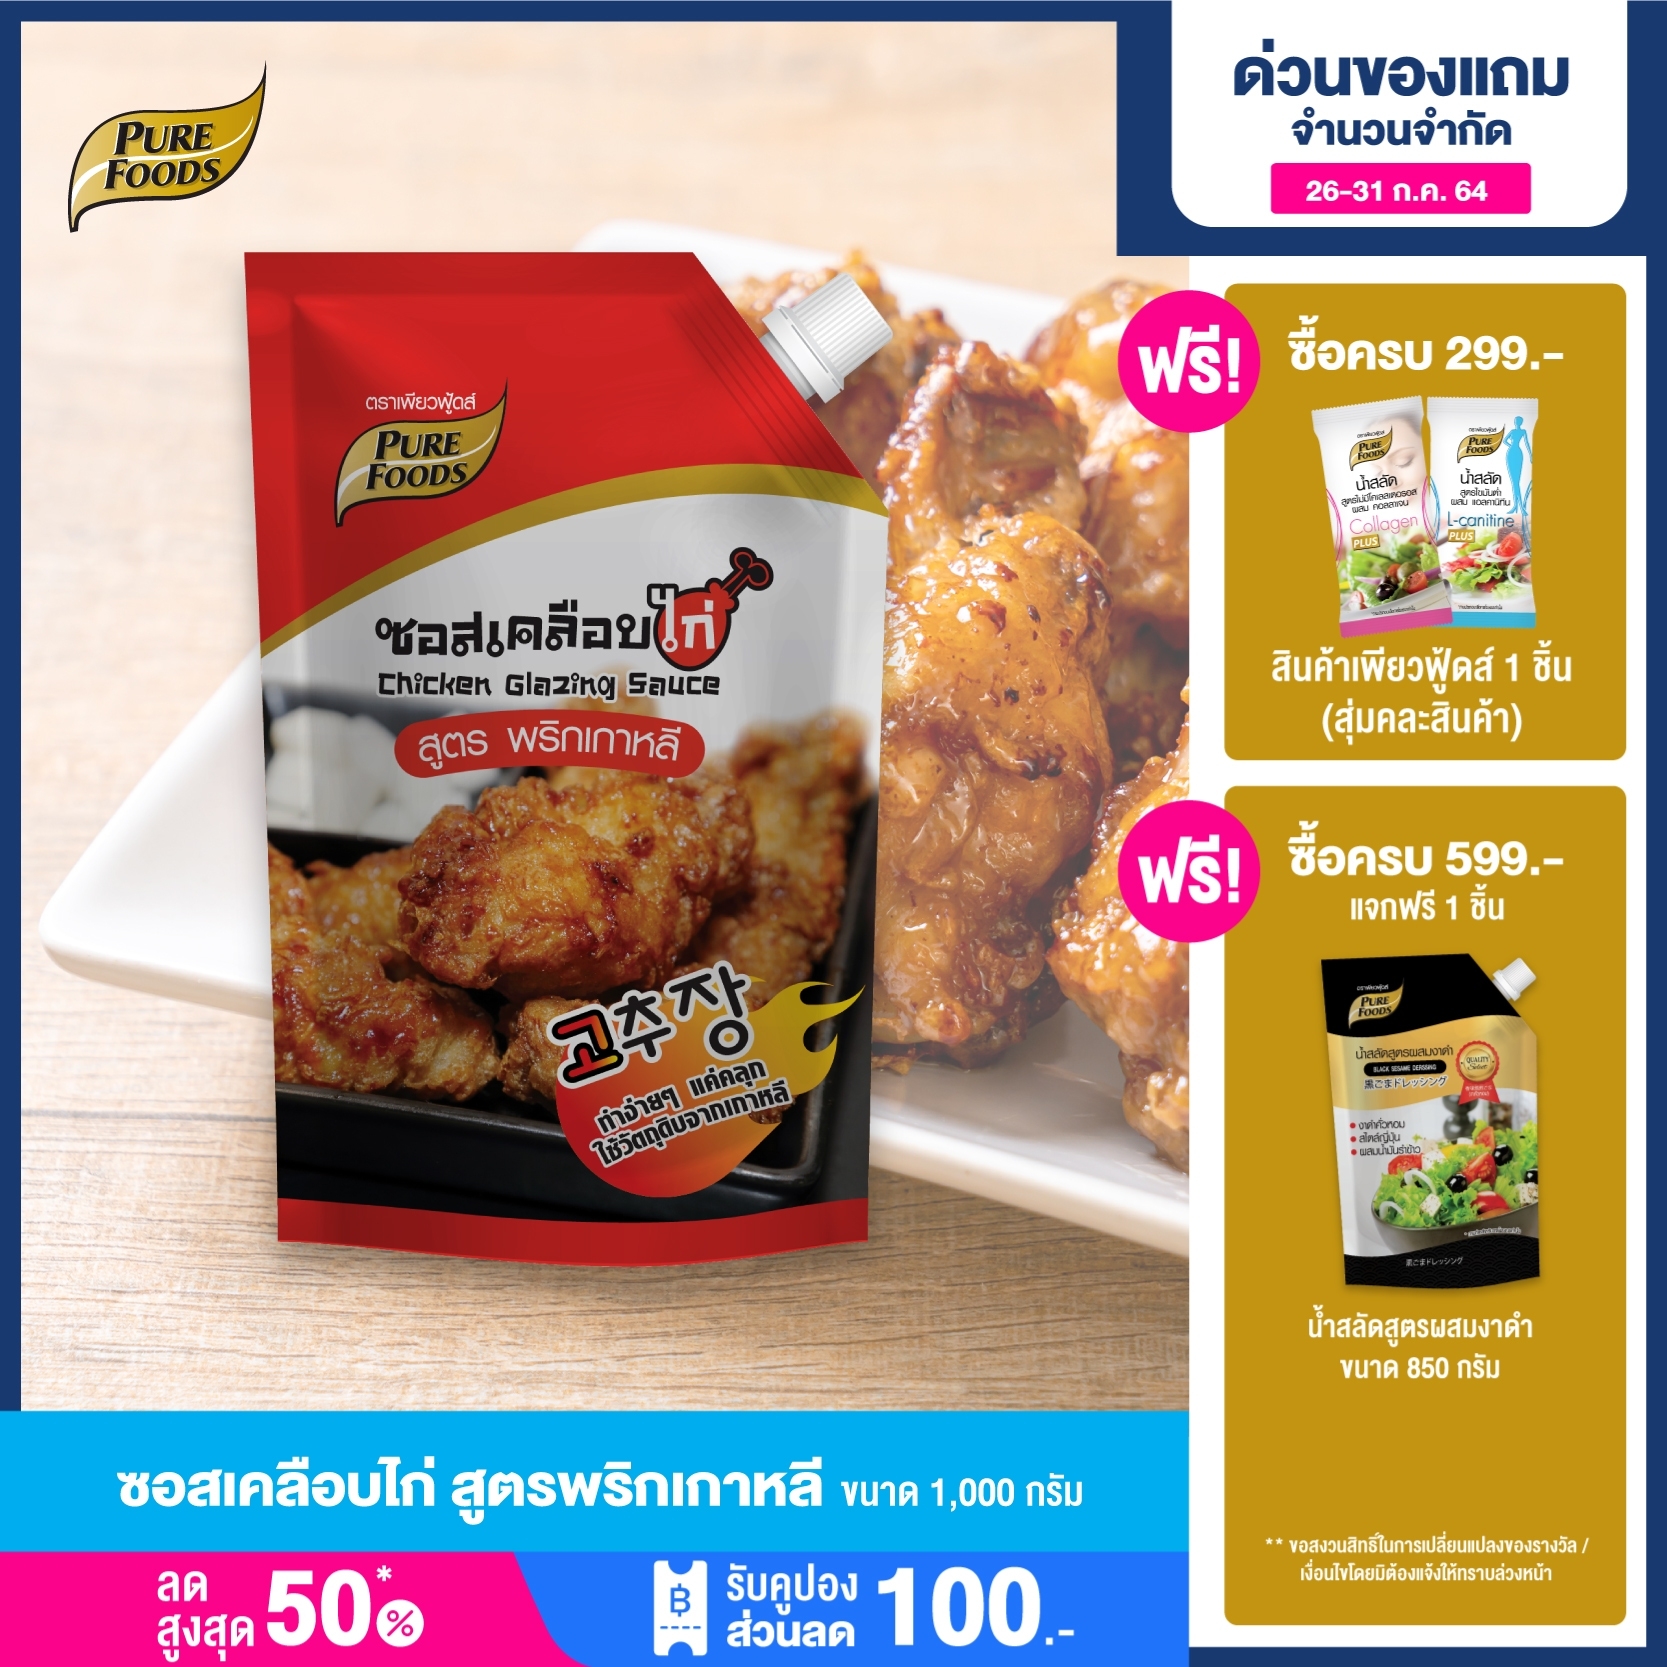 Purefoods : ซอสเคลือบไก่ ซอสไก่เกาหลี สูตรพริกเกาหลี แบบถุง ตราเพียวฟู้ดส์ ขนาด 1,000 กรัม พร้อมส่ง